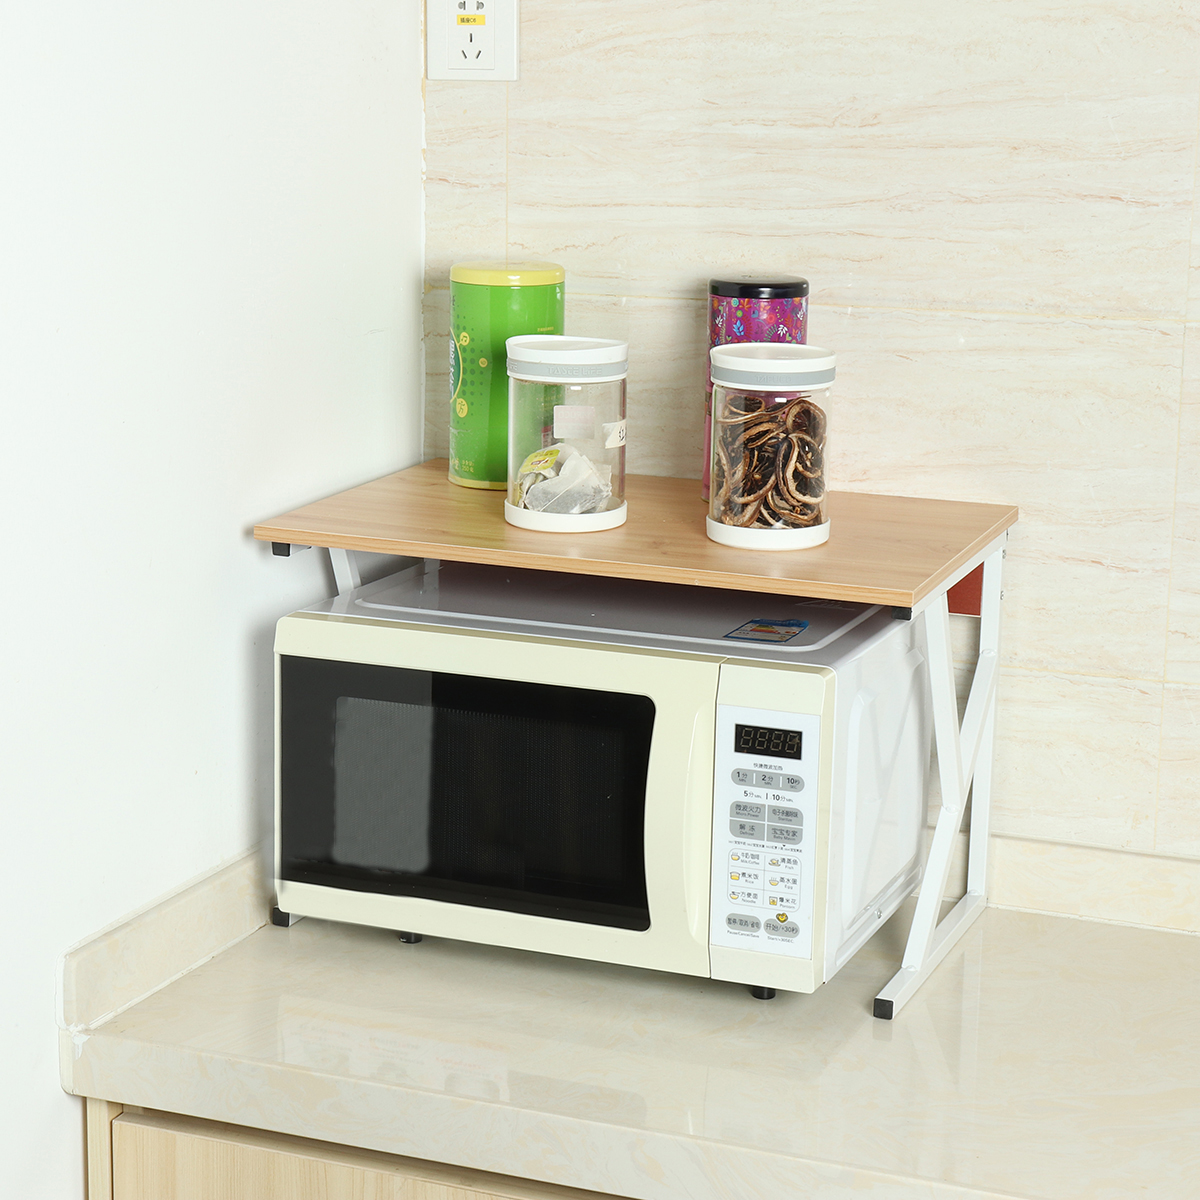 Microwave Oven Rack Kitchen Baker Stand Storage Shelf Kitchen Desktop Space Saving Organizer 59